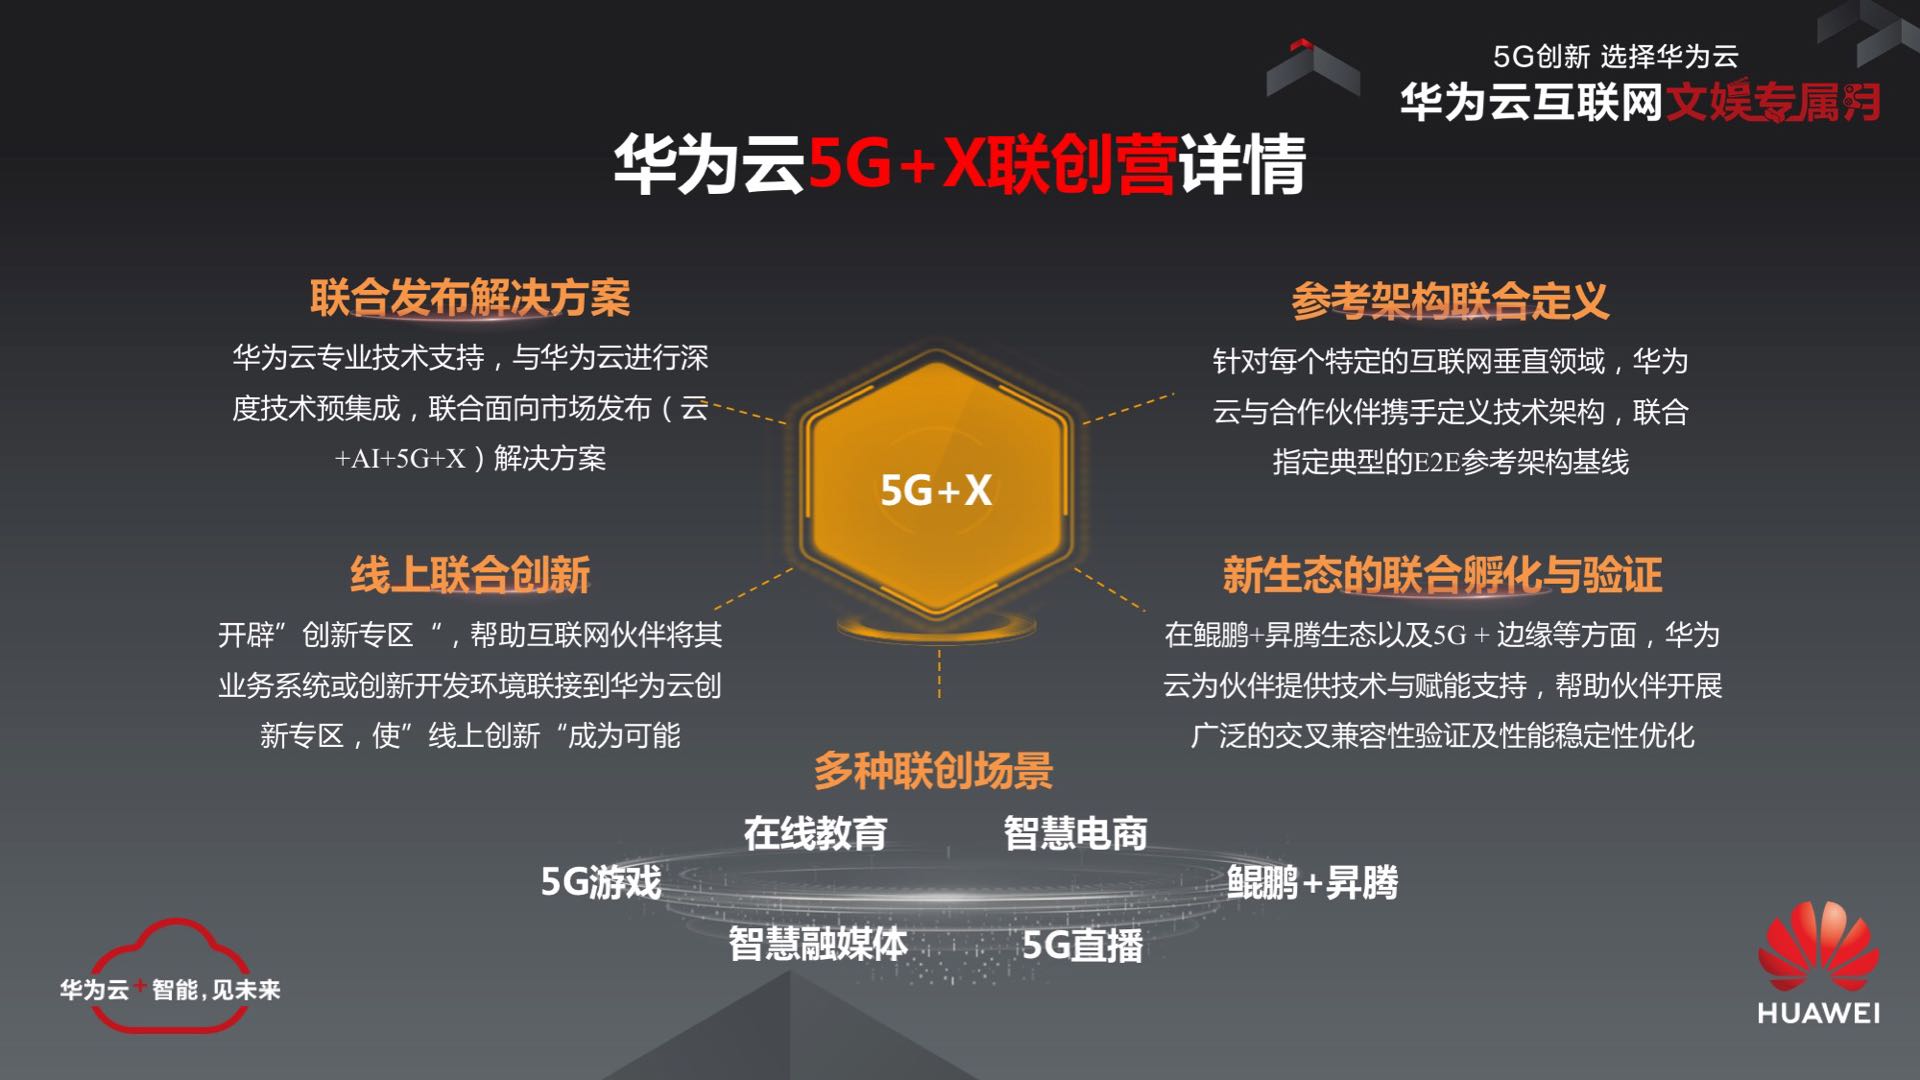 上海：5G 技术引领科技发展，改变生活方式与社交互动模式  第1张